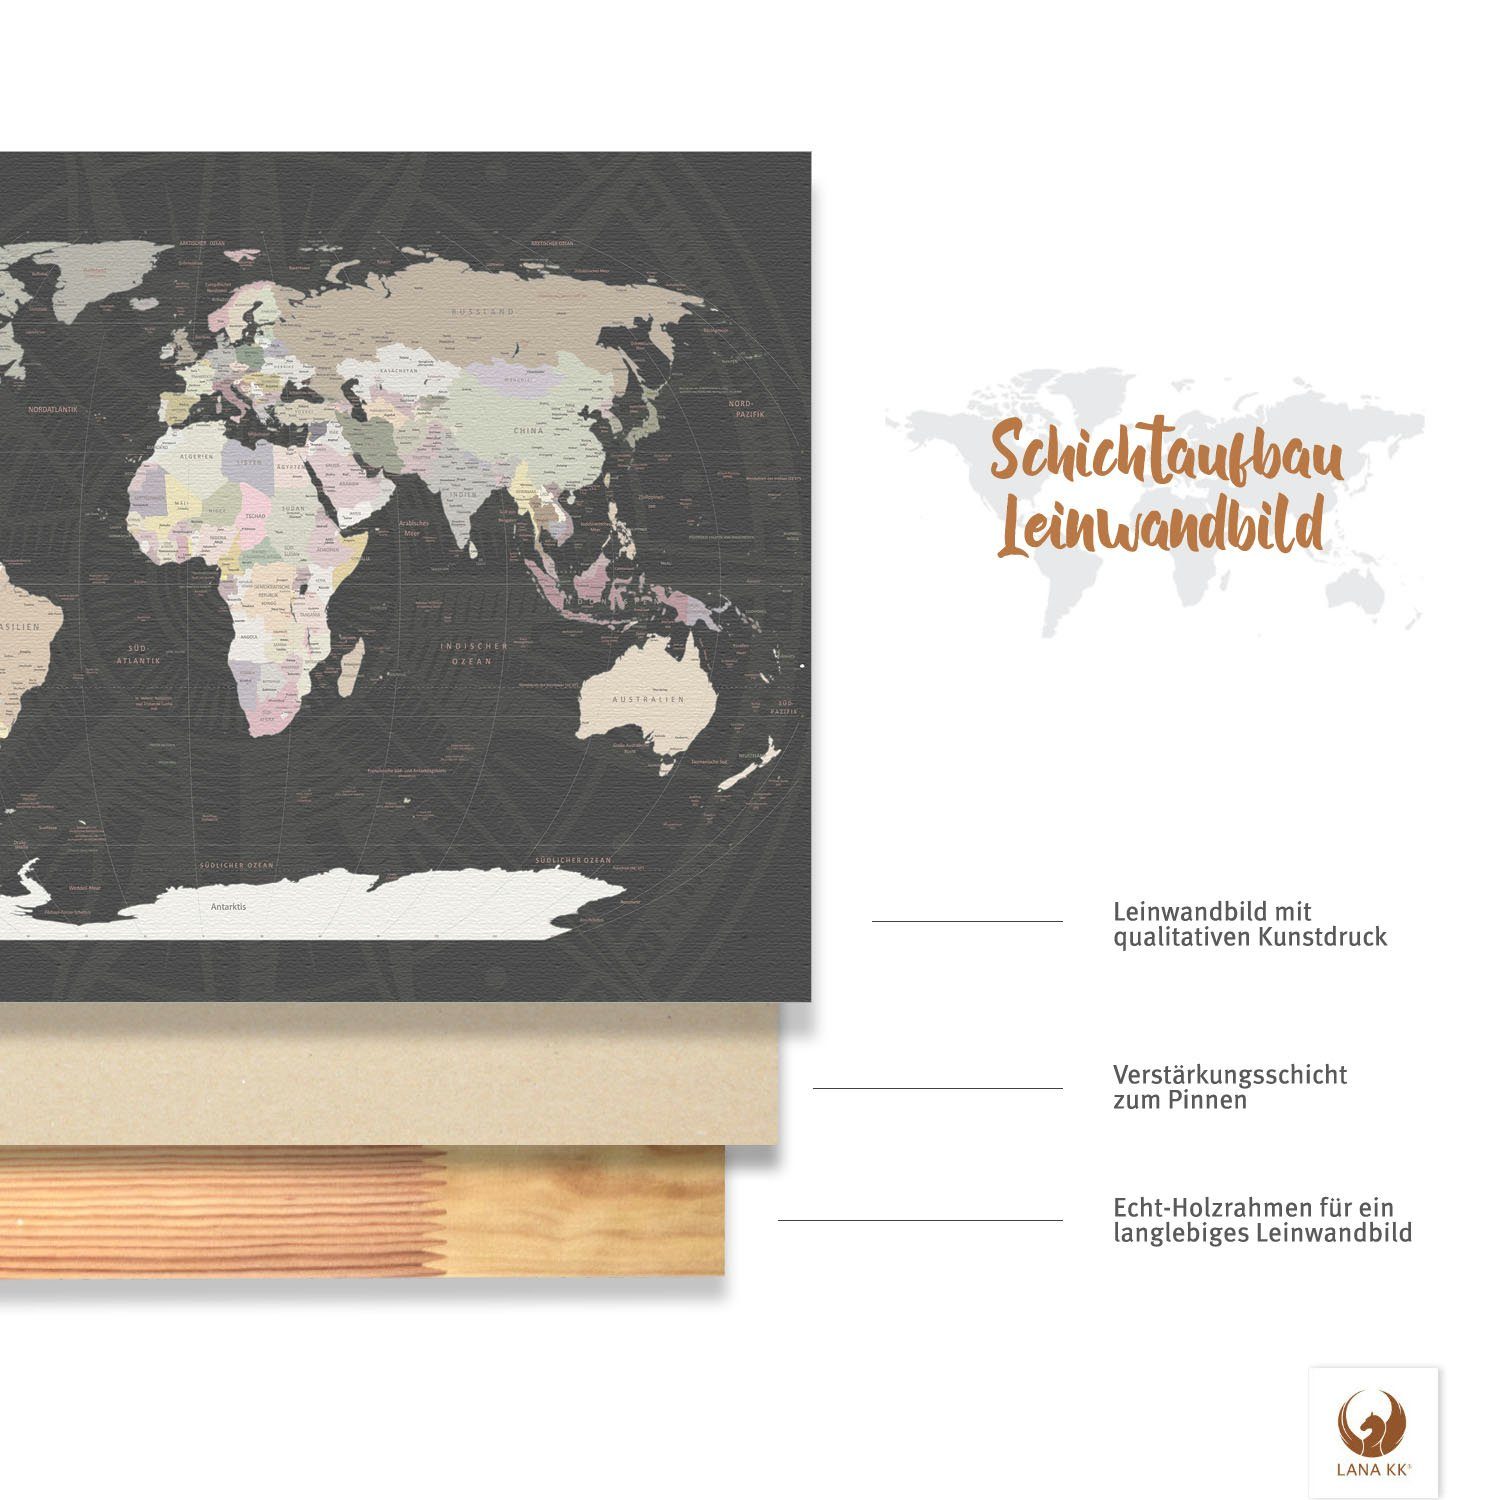 Leinwandbild KK zum markieren Grey von Reisezielen, LANA Pinnwand deutsche Beschriftung Weltkarte